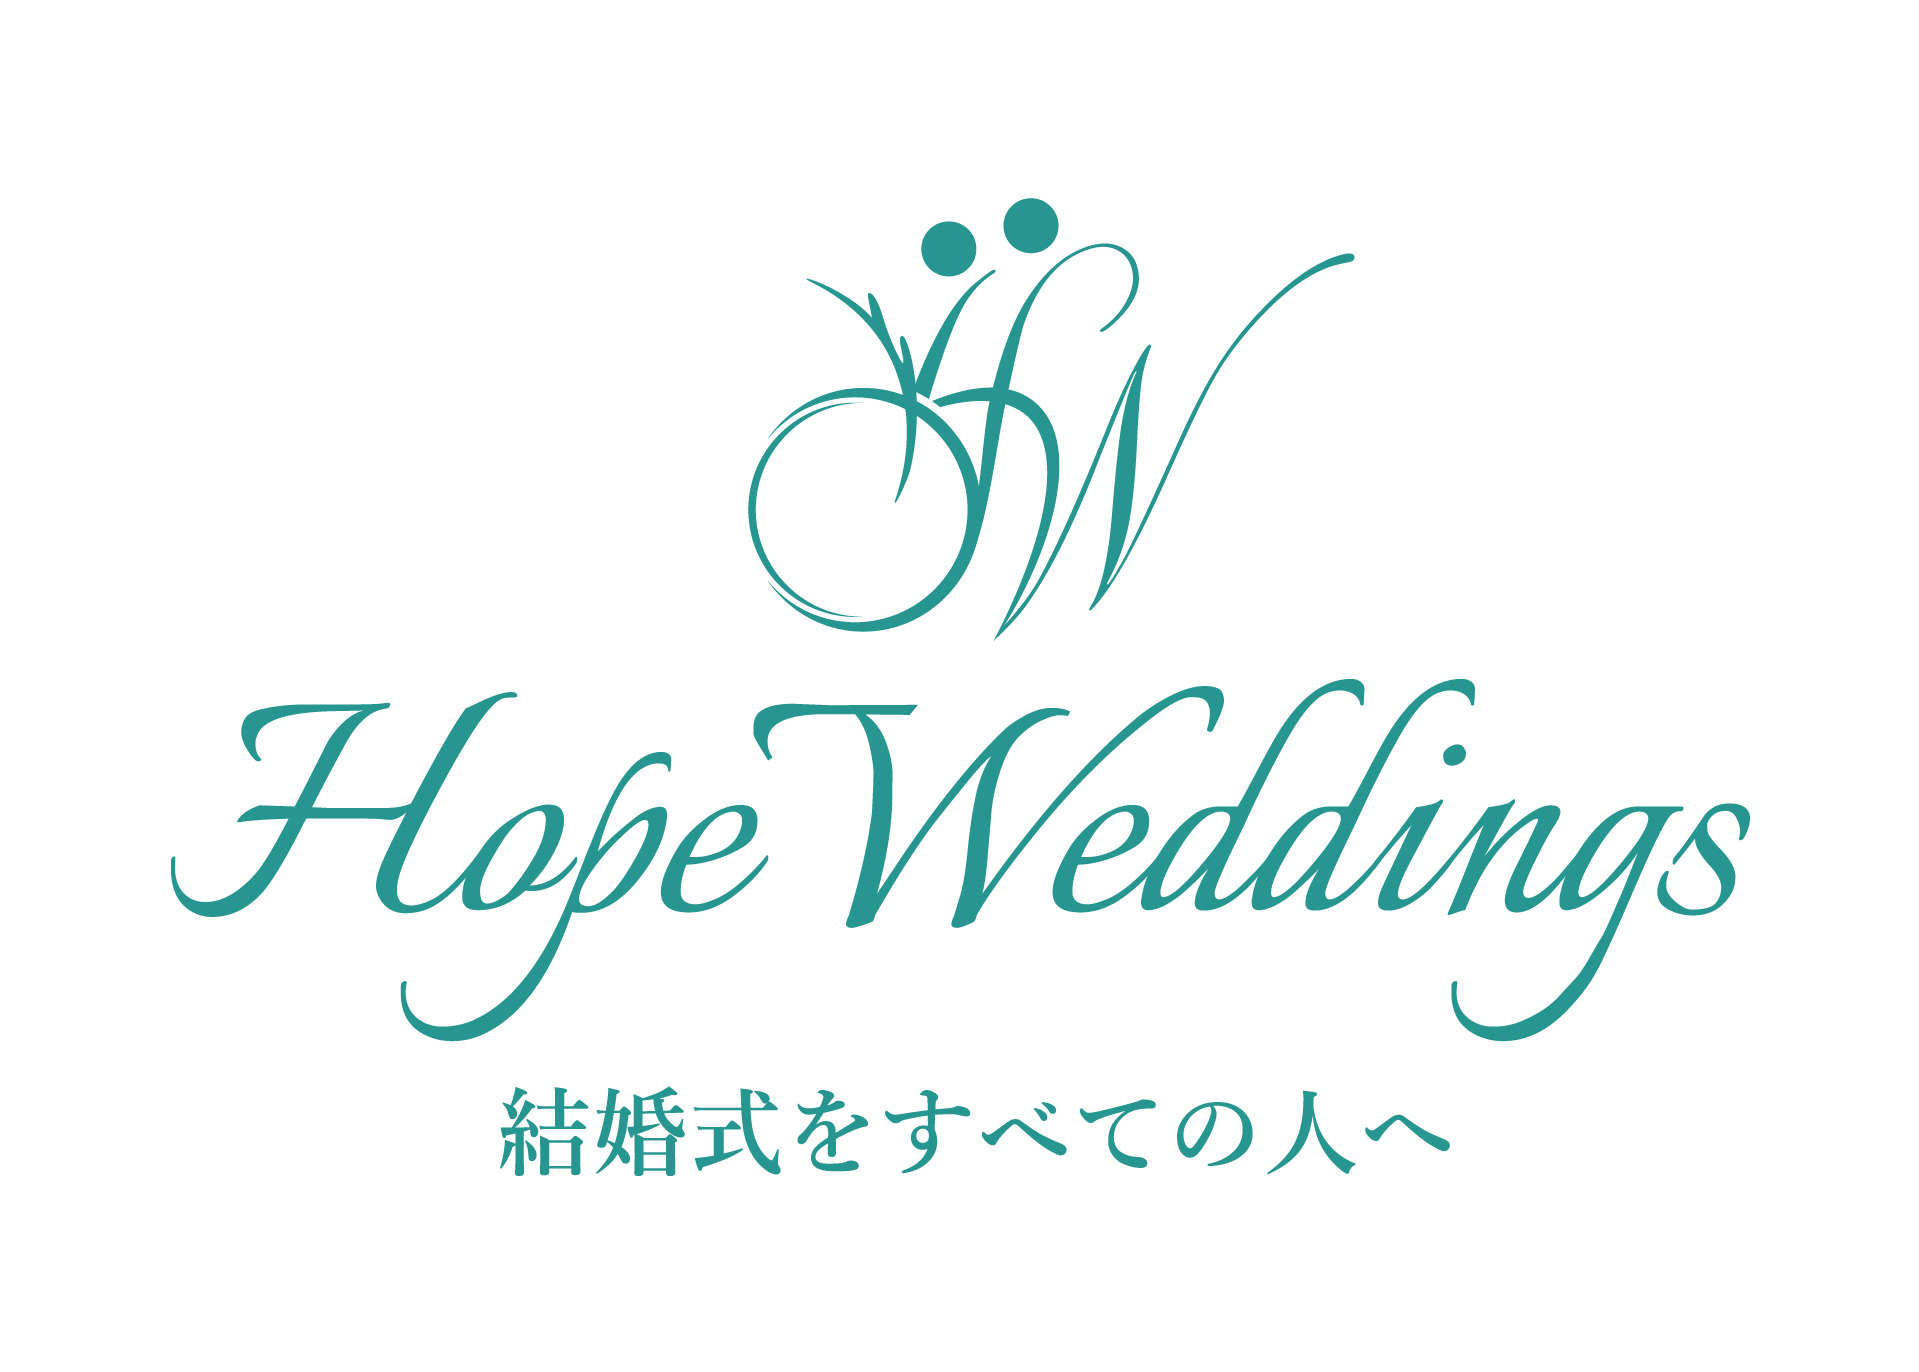 Hope Weddings